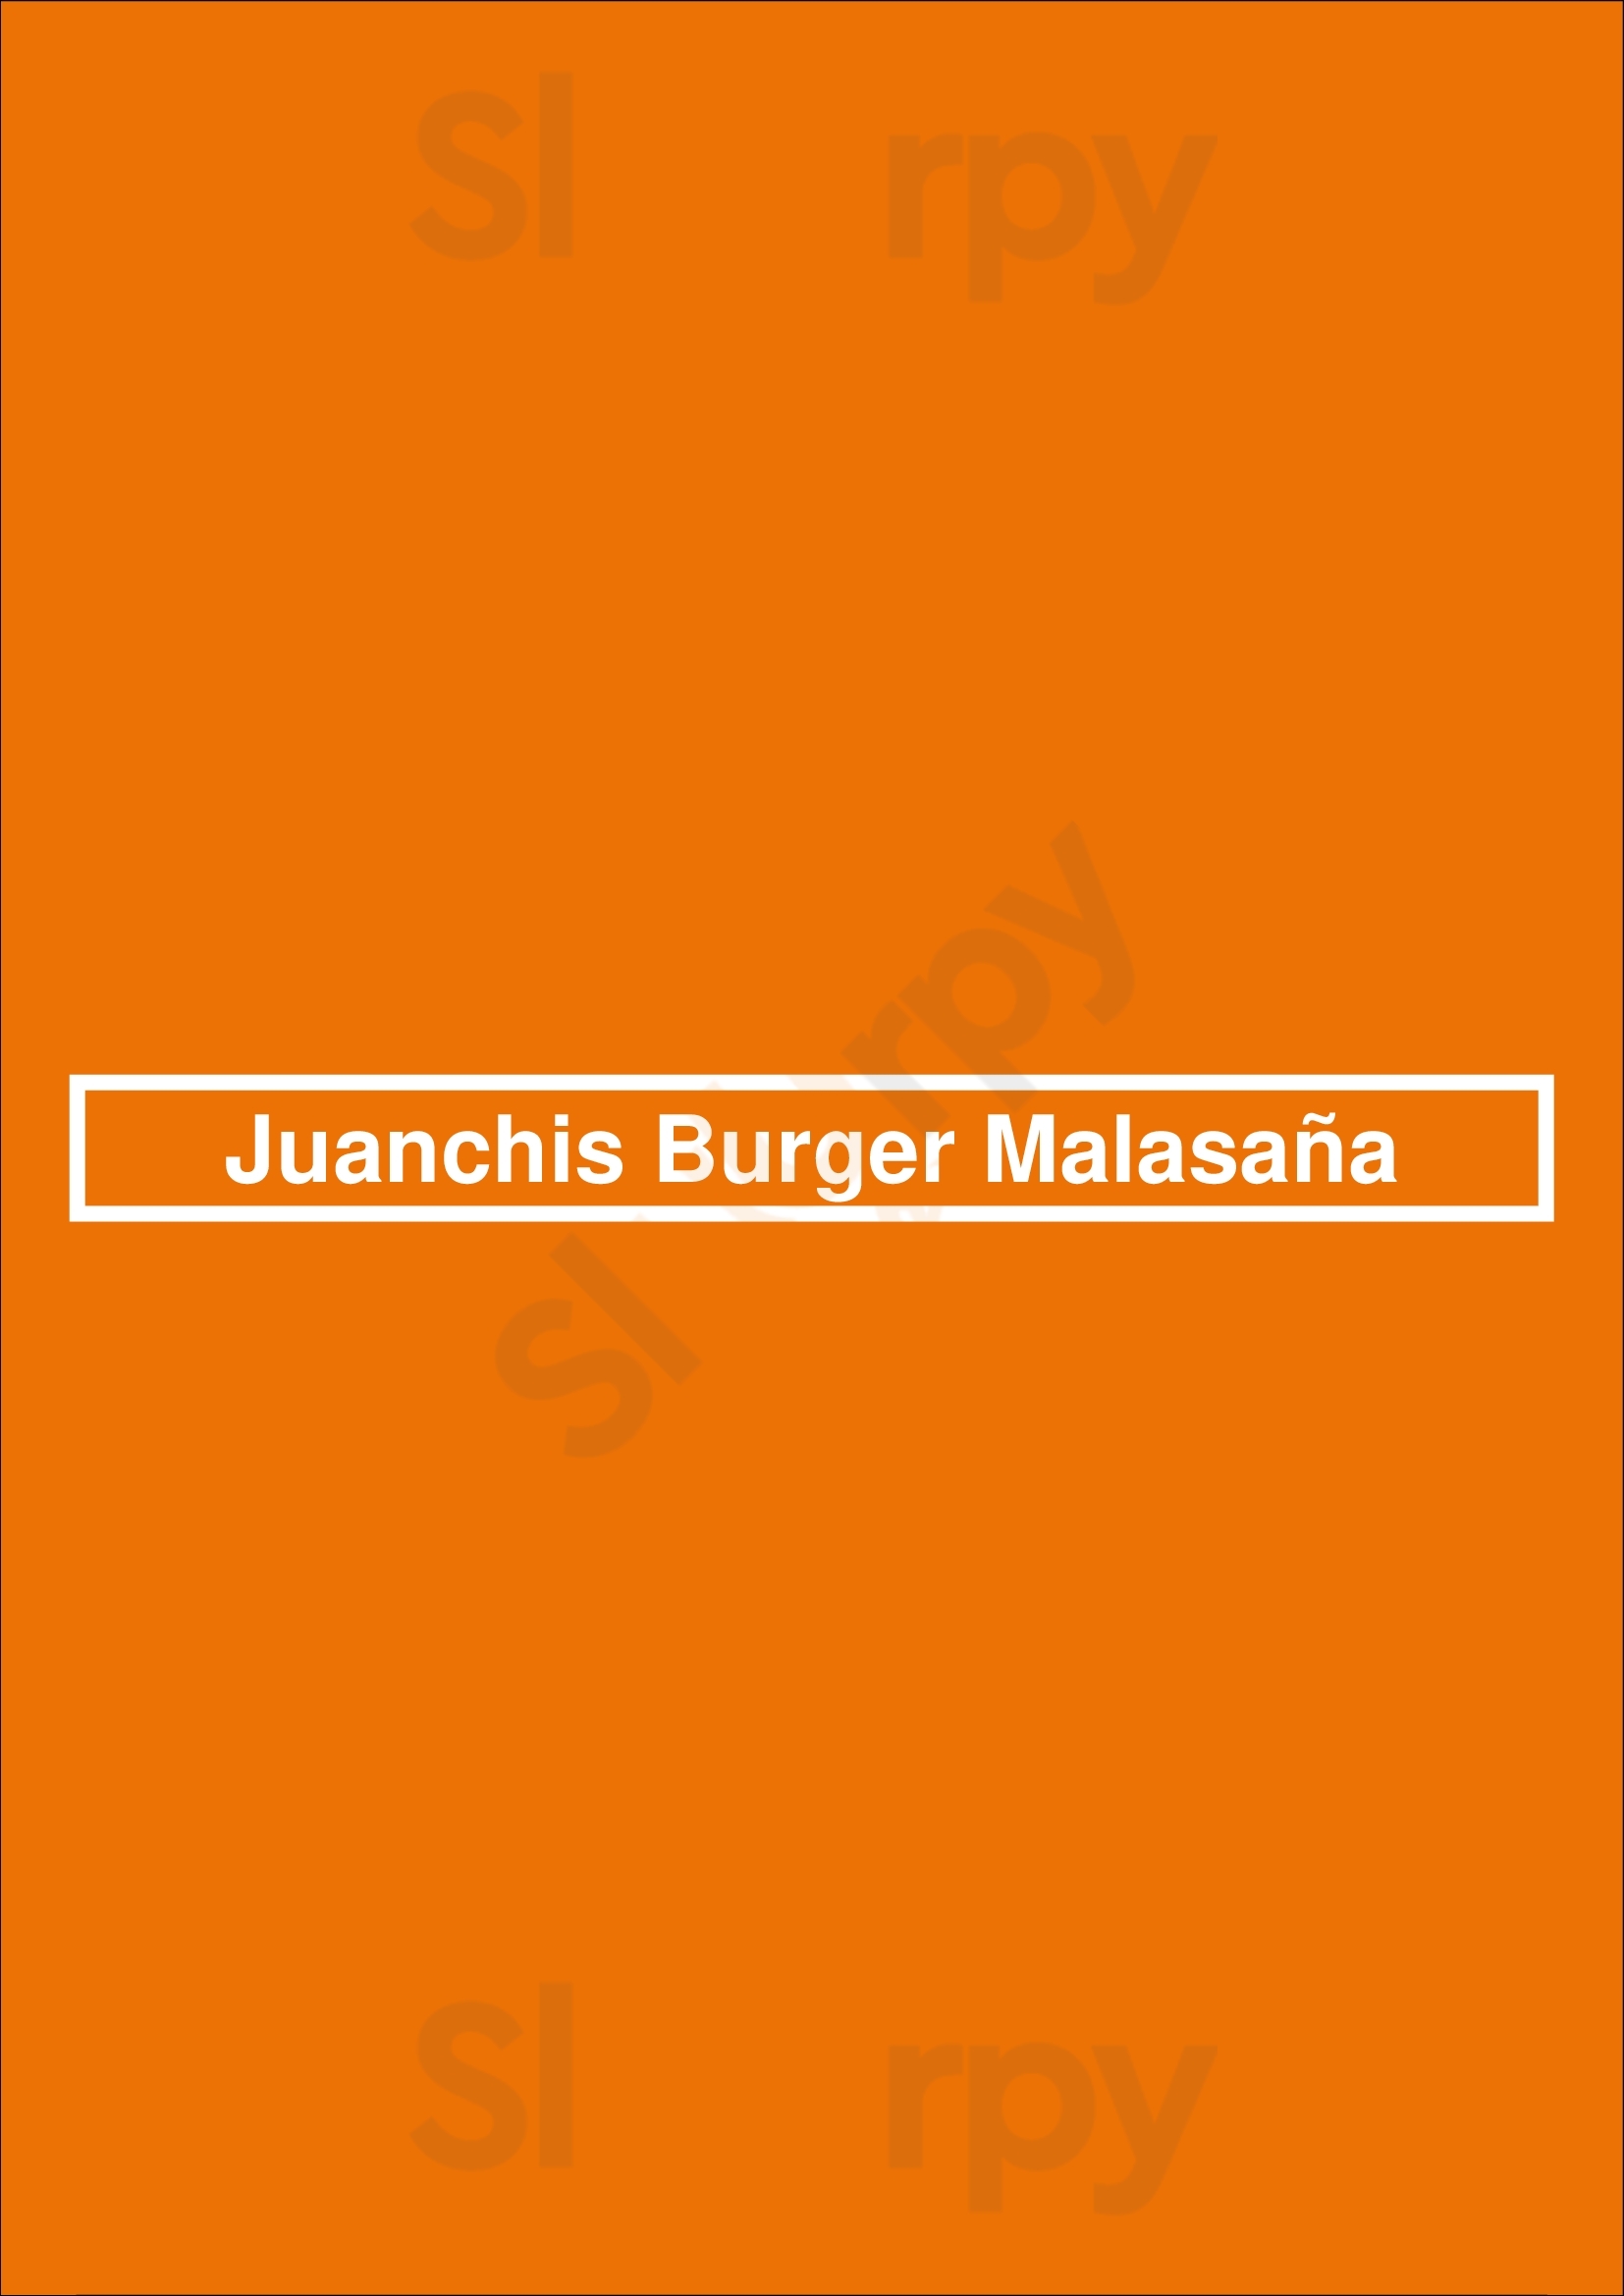 Juanchis Burger Malasaña Madrid Menu - 1